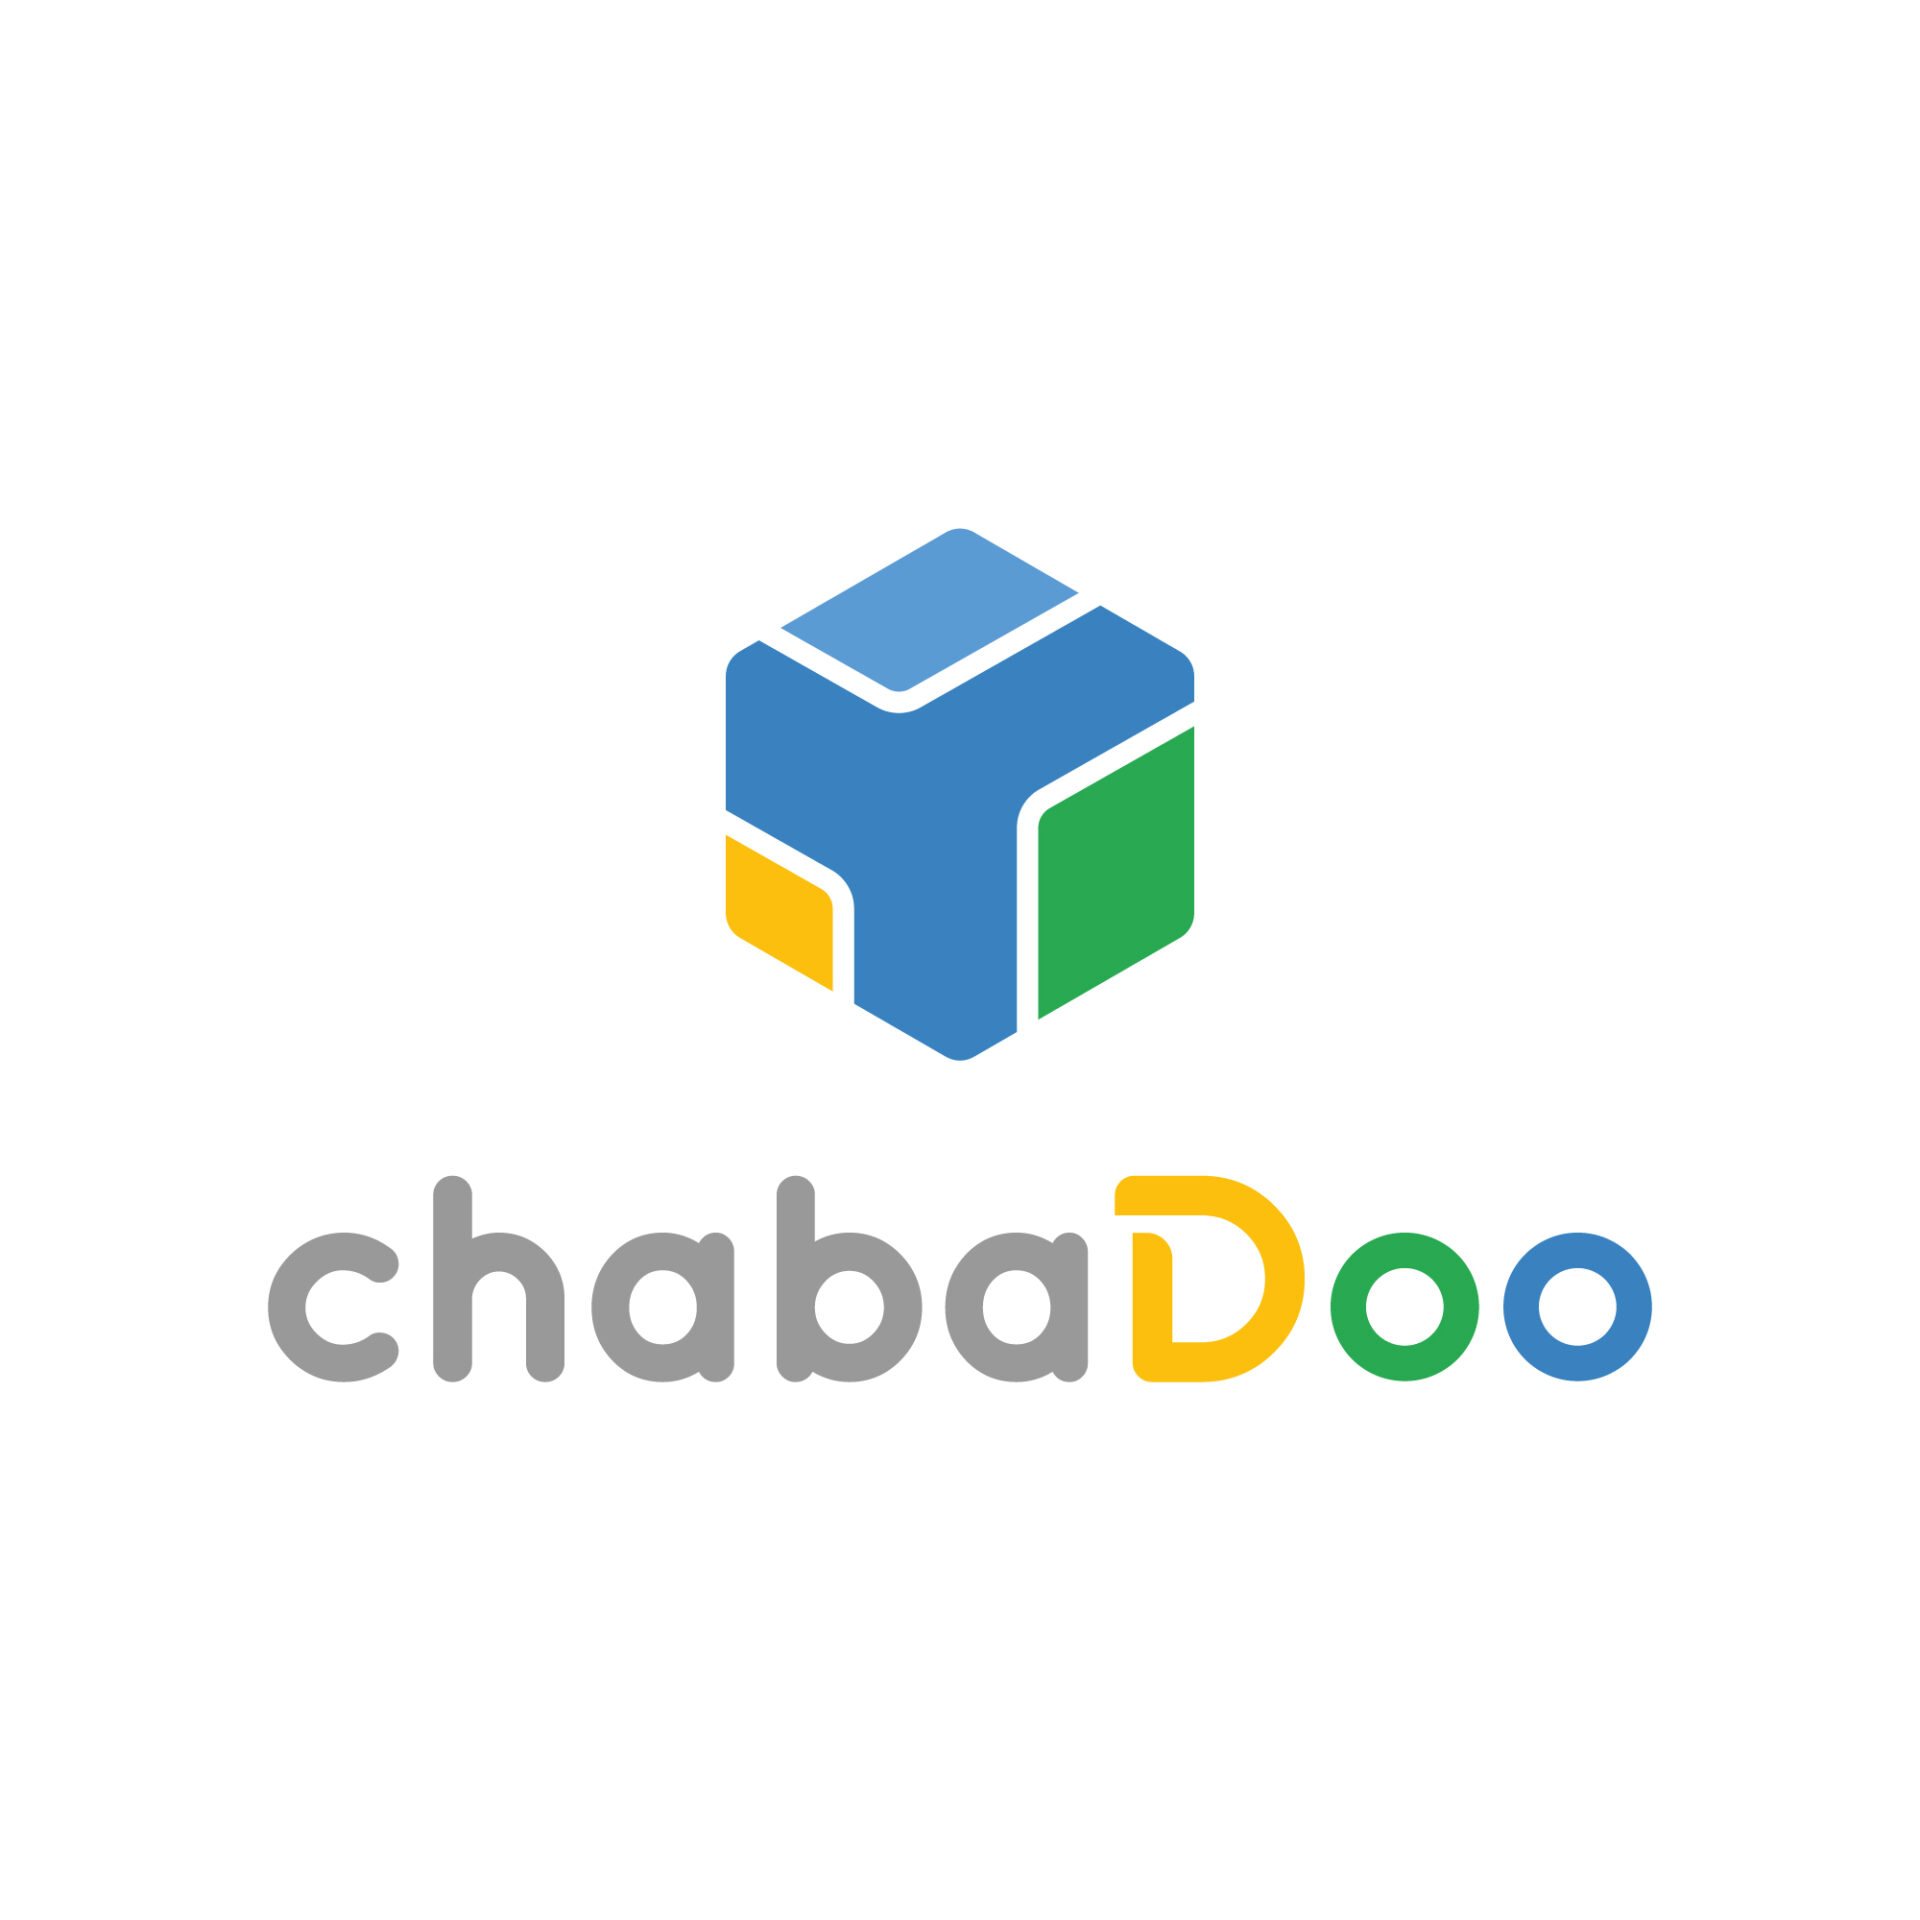 chabaDoo Logo